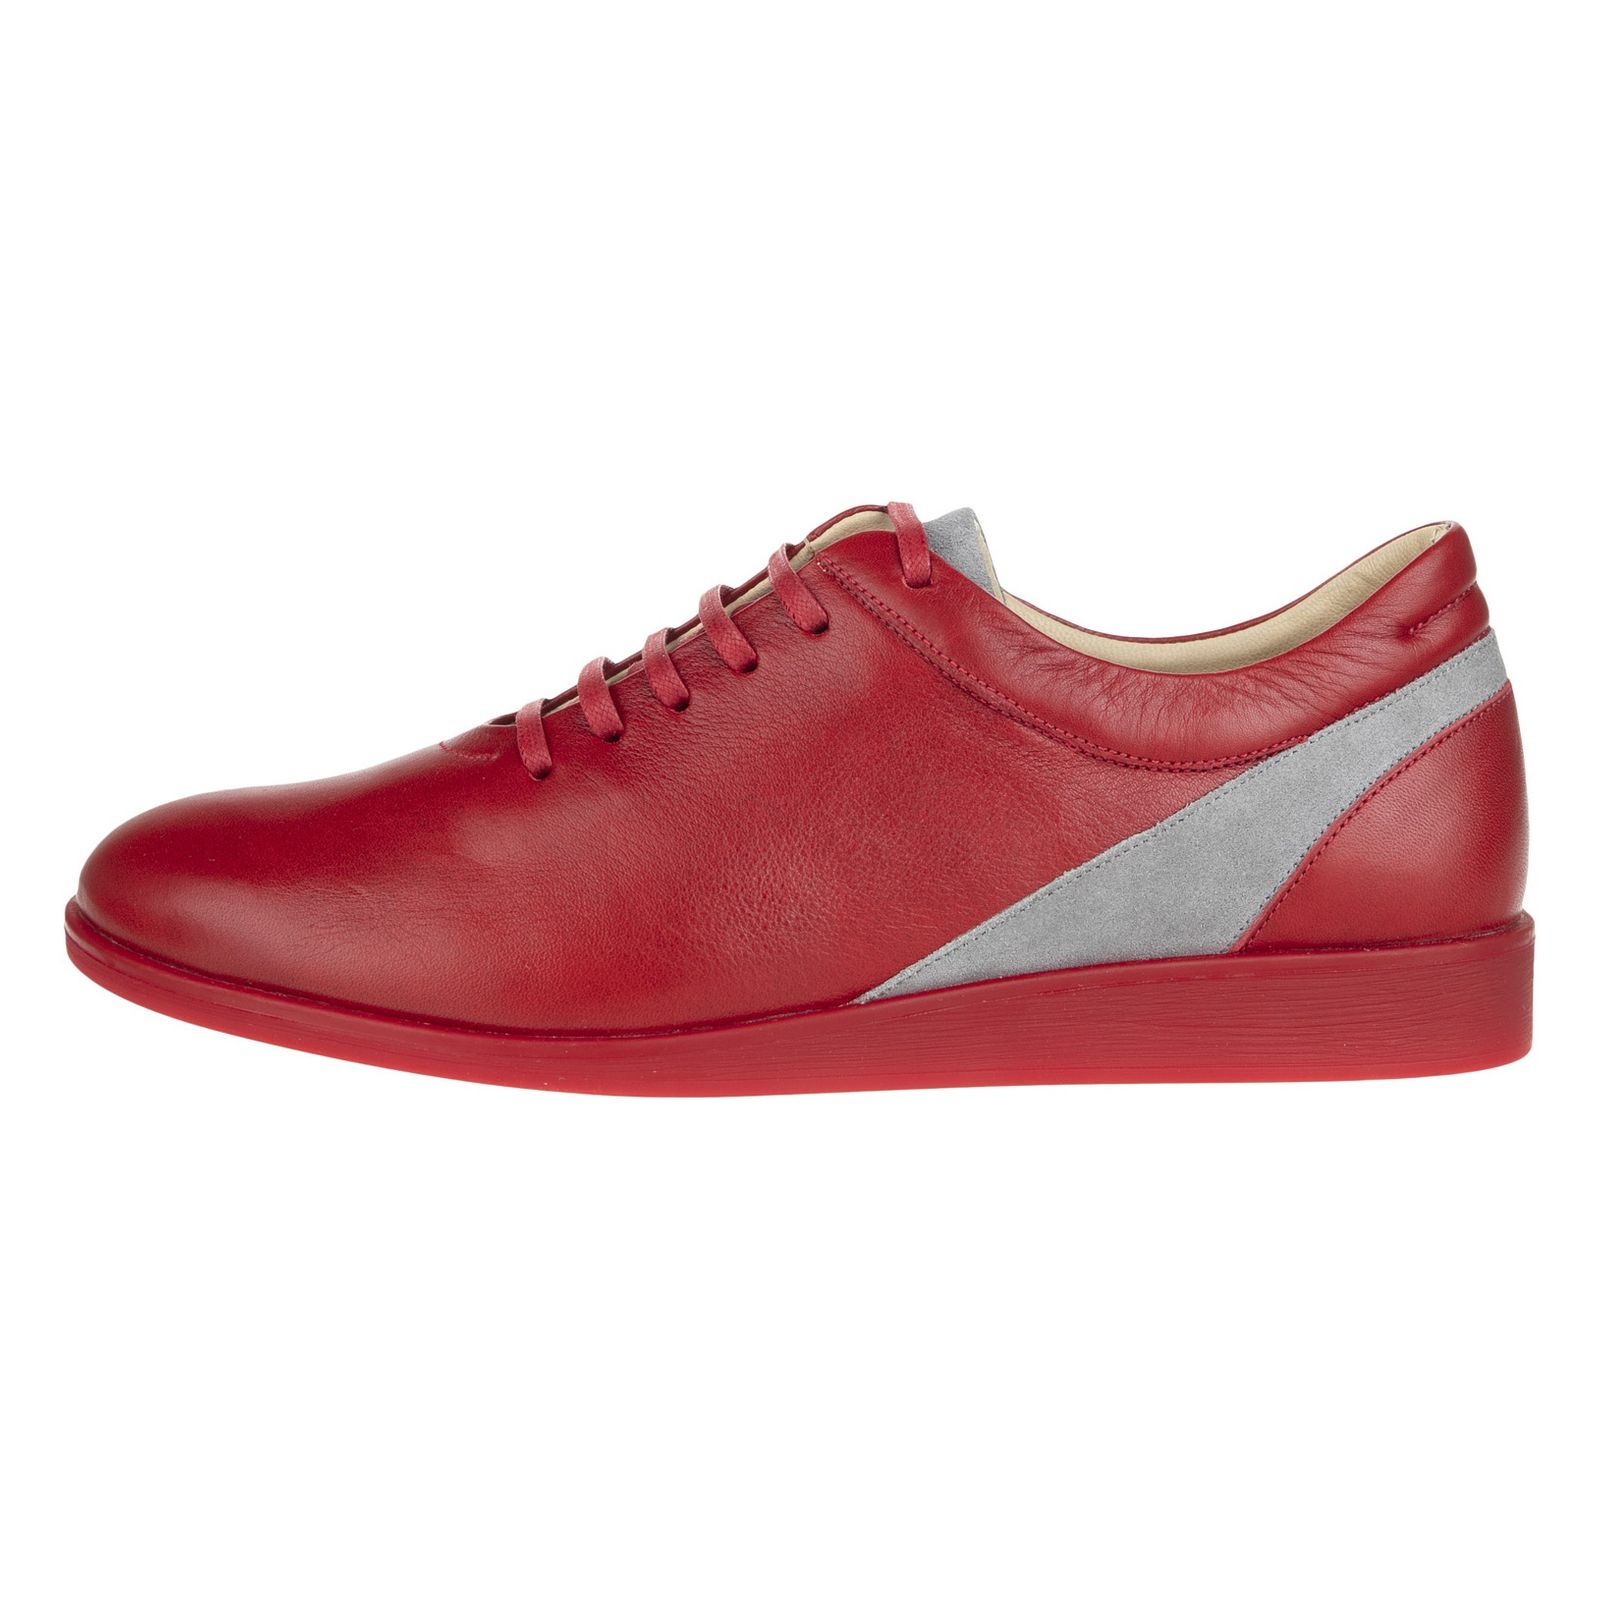 کفش روزمره زنانه برتونیکس مدل 960-24 - قرمز - 2